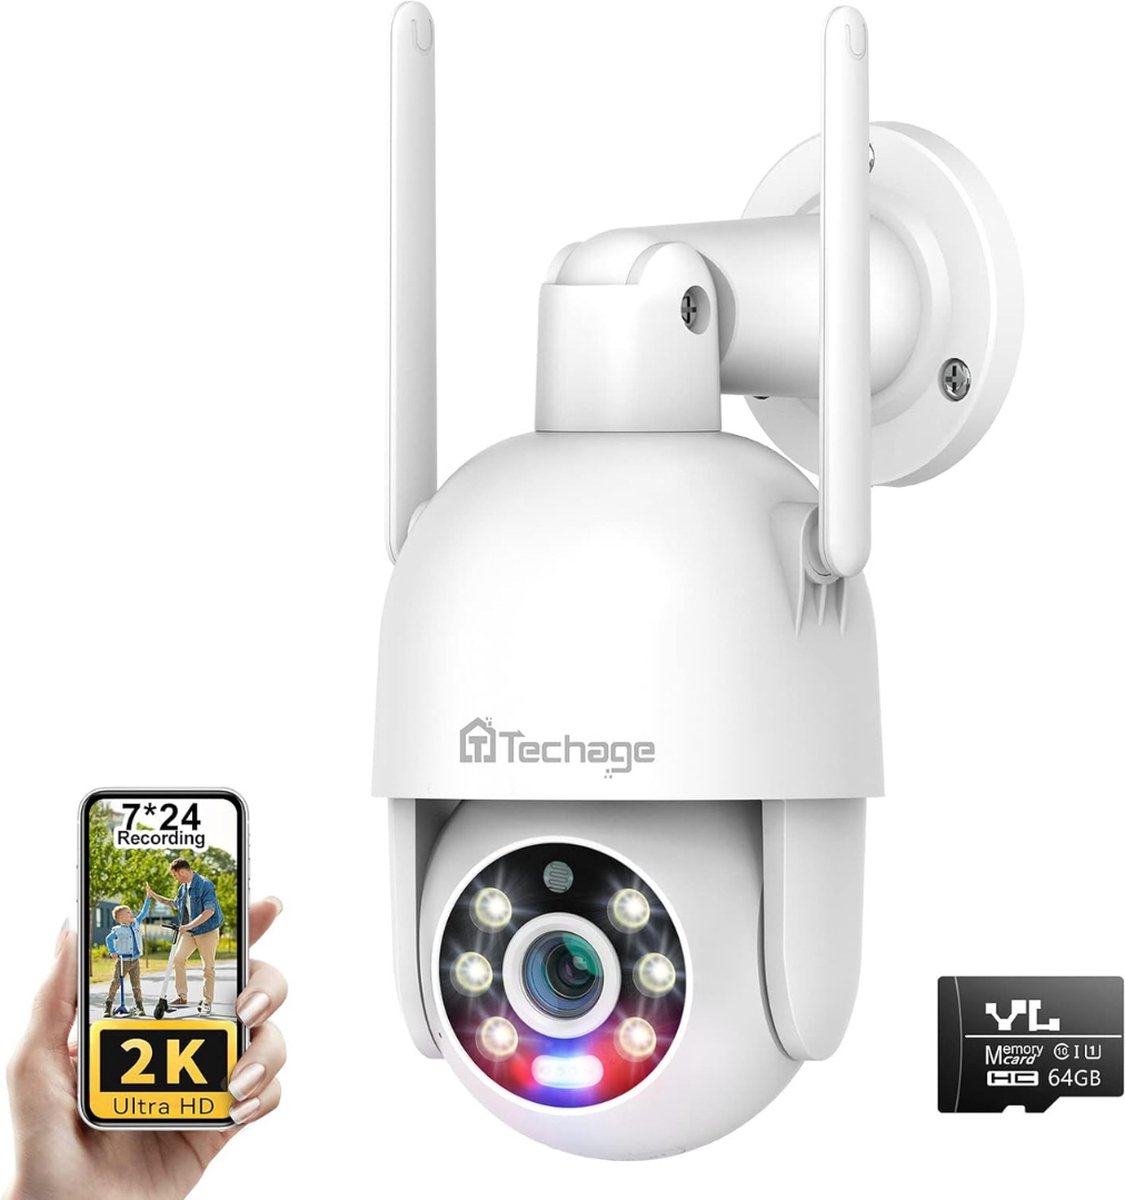 Beveiligingscamera - 360 ° View - 2K Draadloze Beveiligingscamera - Bewegingsdetectie, Geluidslichtalarm, Audio, Nightvision + SD-Kaart